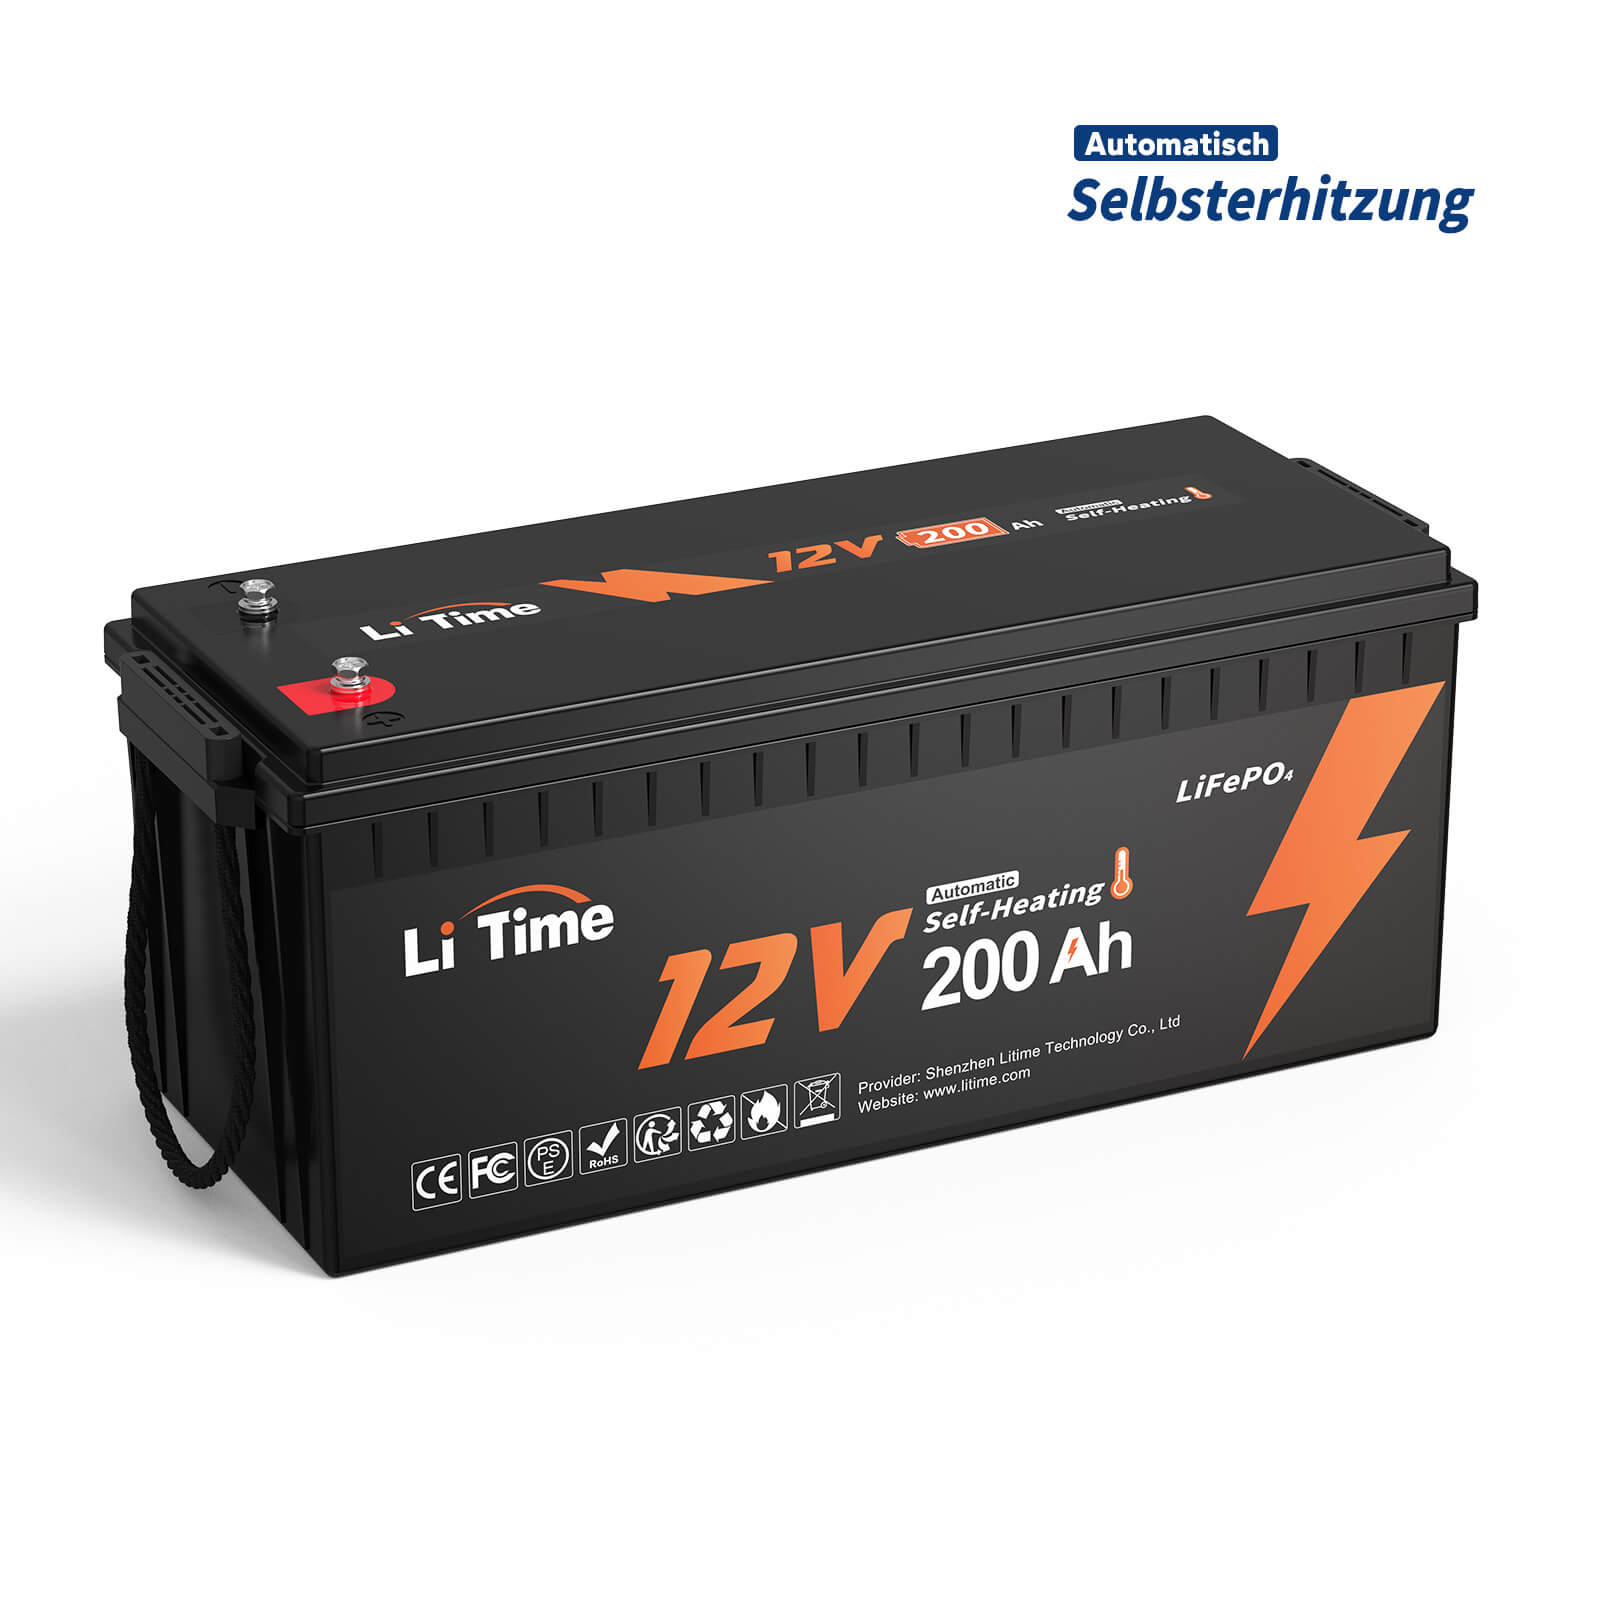 【TVA 0%】 Batterie au lithium LiTime 12V 200Ah auto-chauffante LiFePO4 avec BMS 100A, prend en charge la charge à basse température -20°C